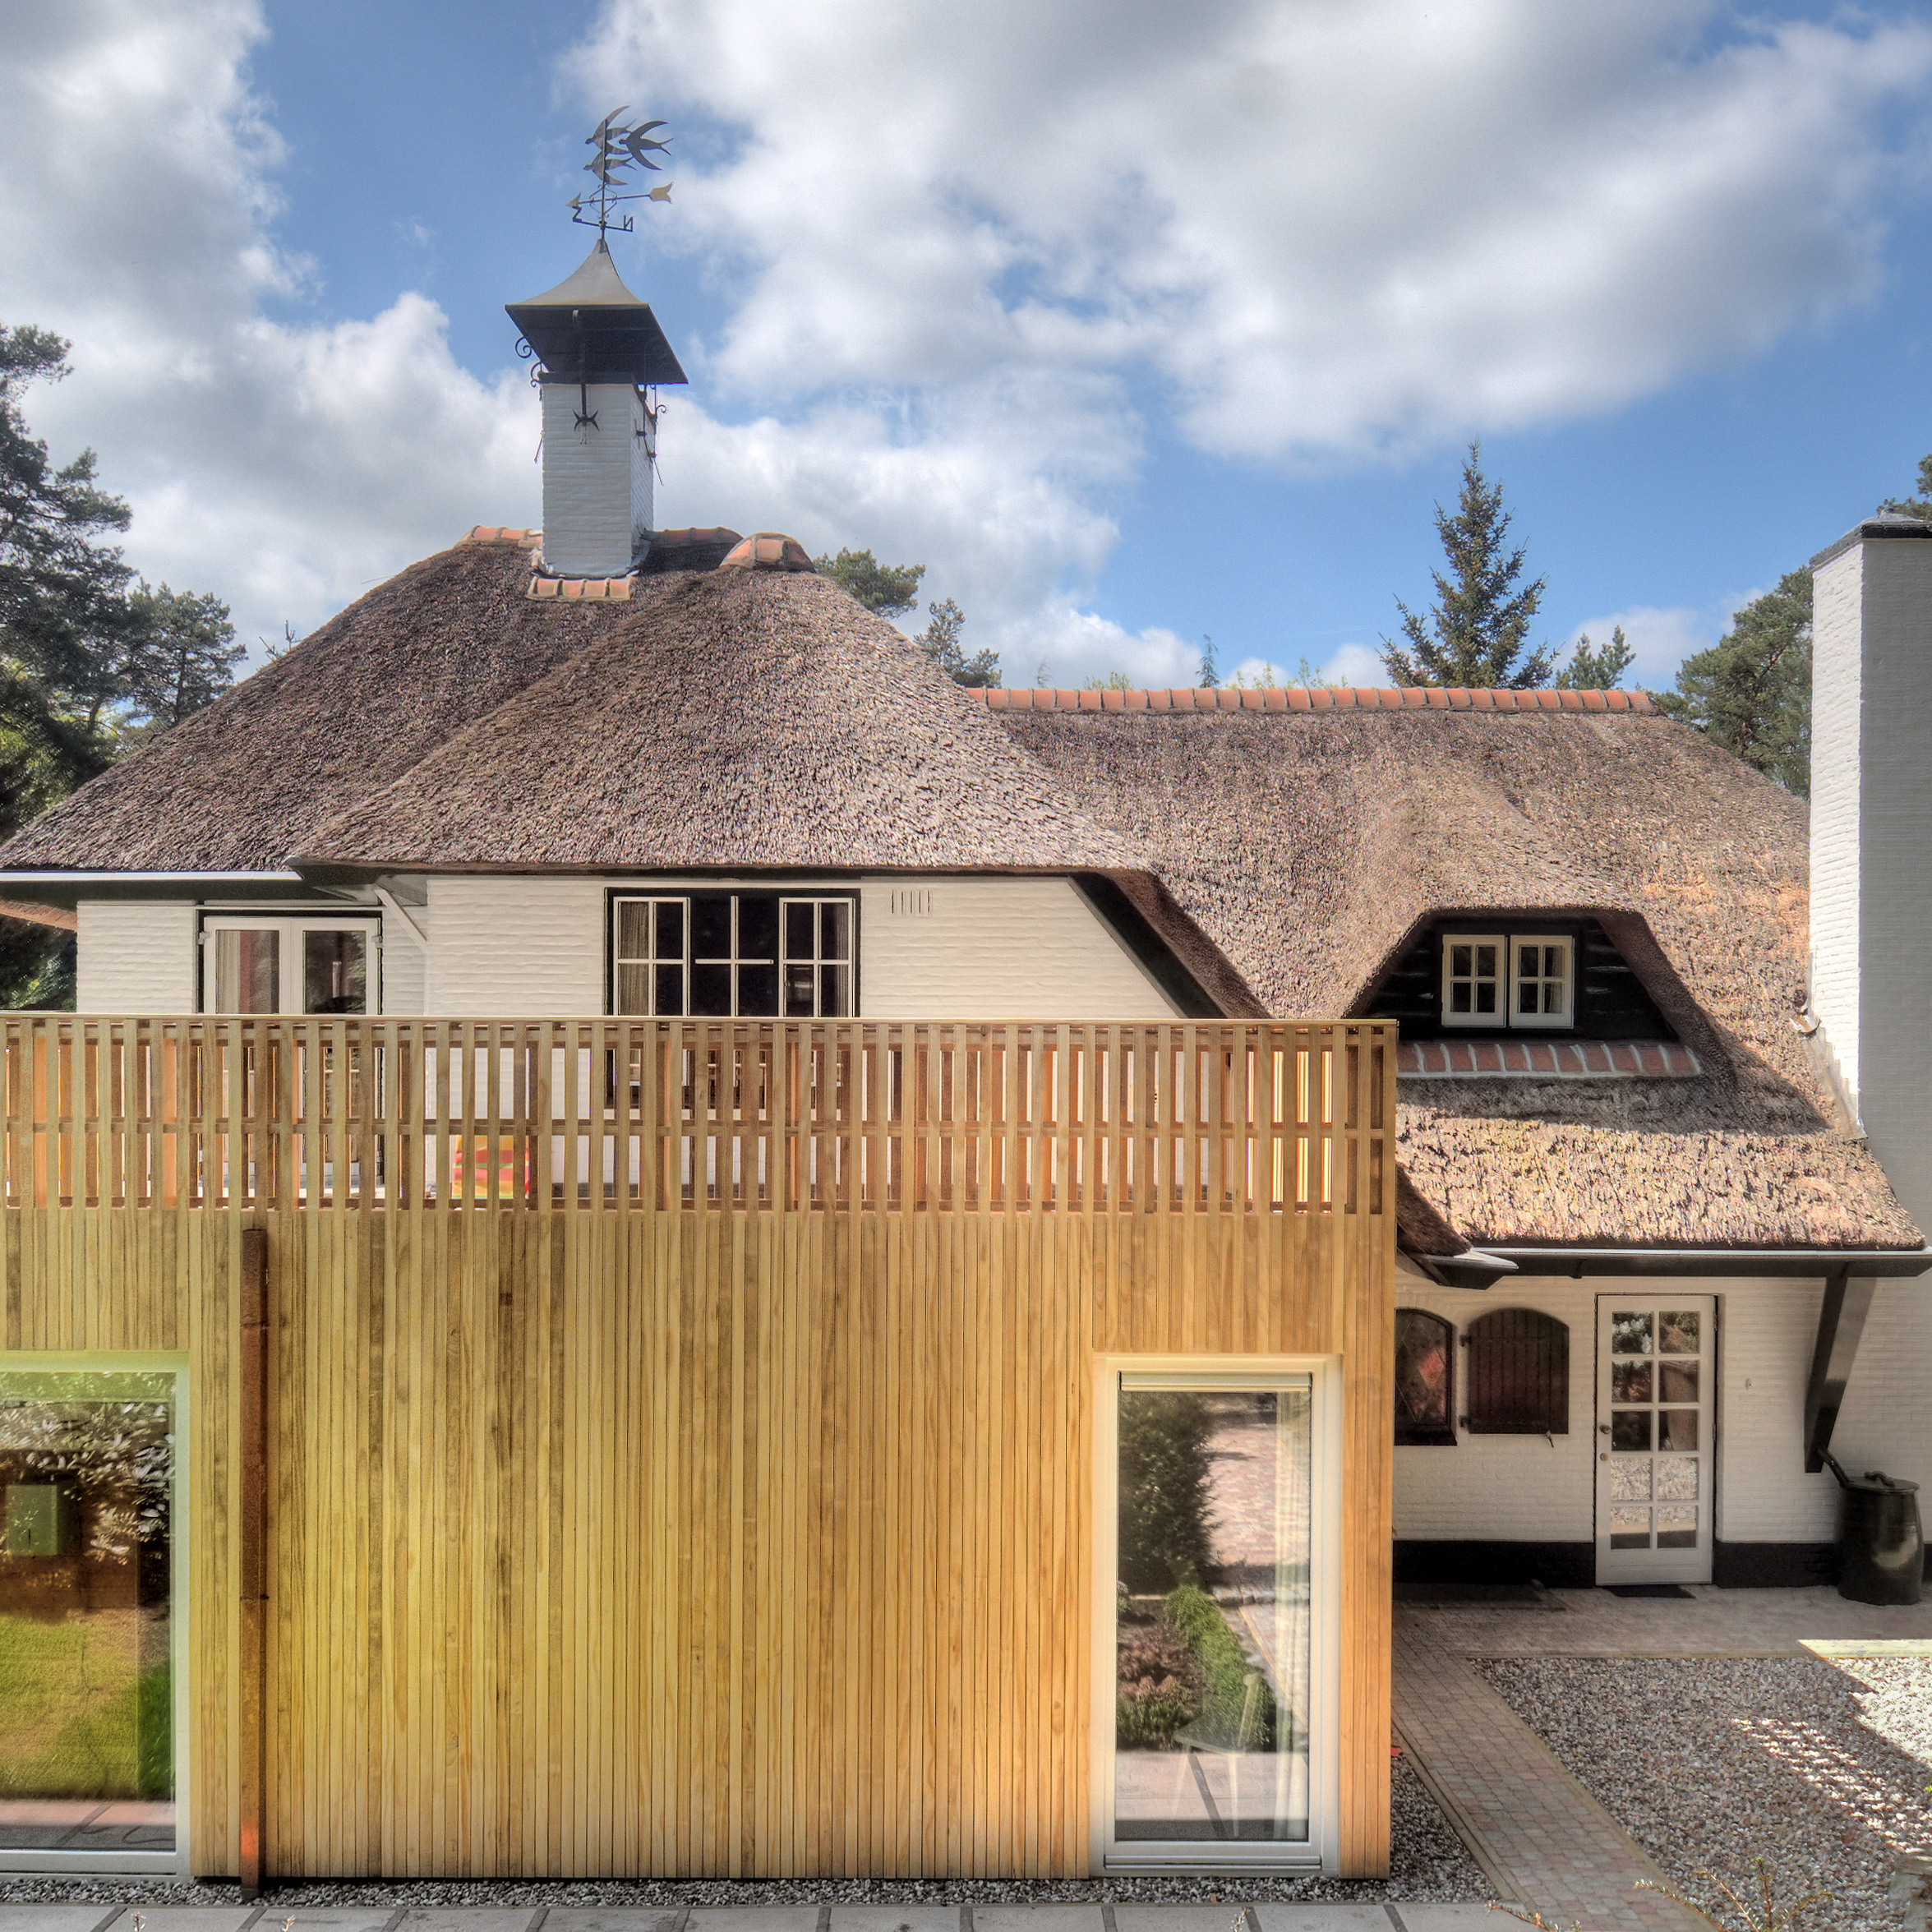 Renovatie met uitbouw vrijstaande villa met rietenkap en houten gevel in Doorn door architect Maxim Winkelaar uit Amsterdam.